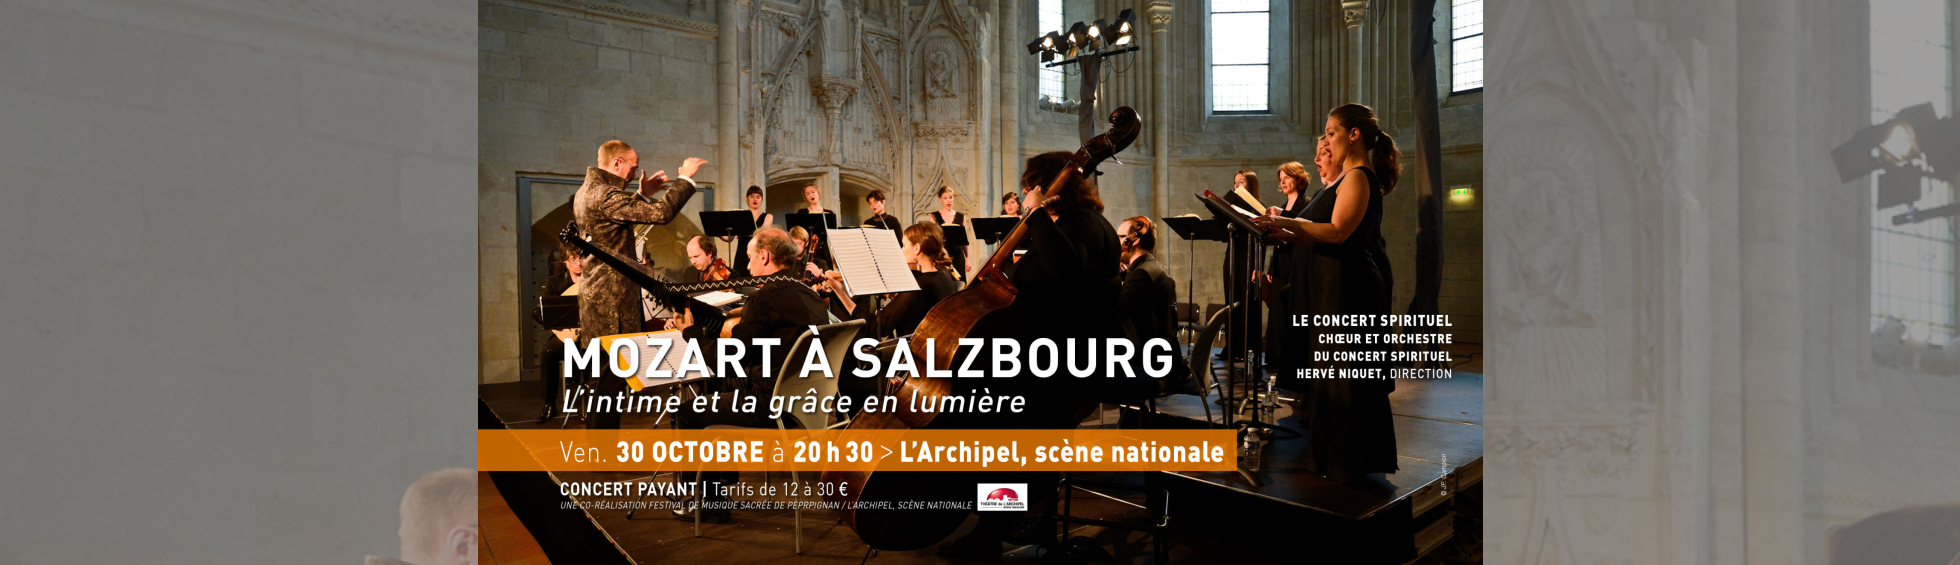  MOZART À SALZBOURG-2  © Le Concert spirituel